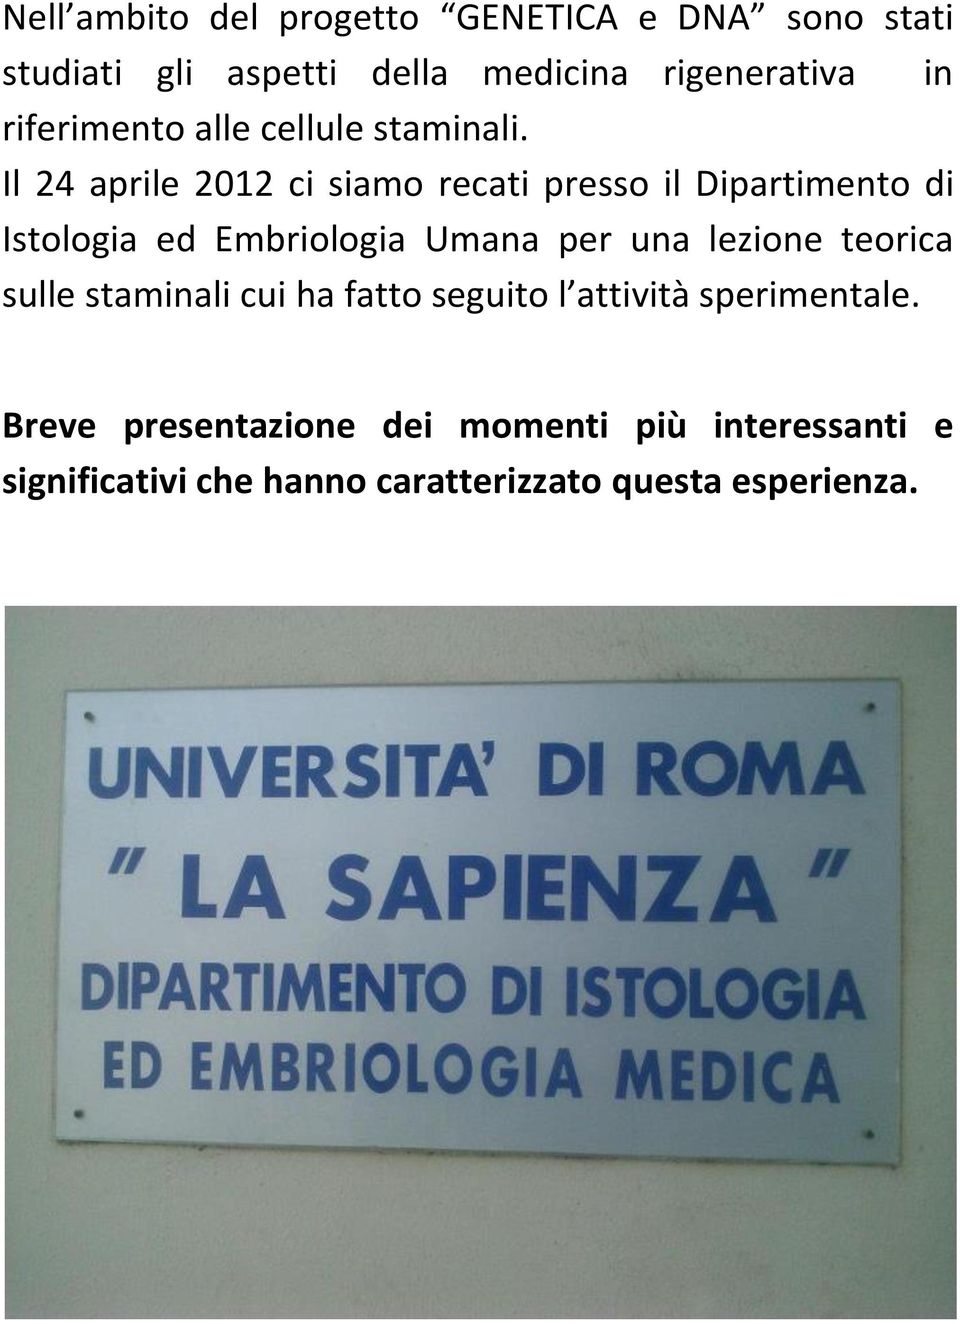 Il 24 aprile 2012 ci siamo recati presso il Dipartimento di Istologia ed Embriologia Umana per una